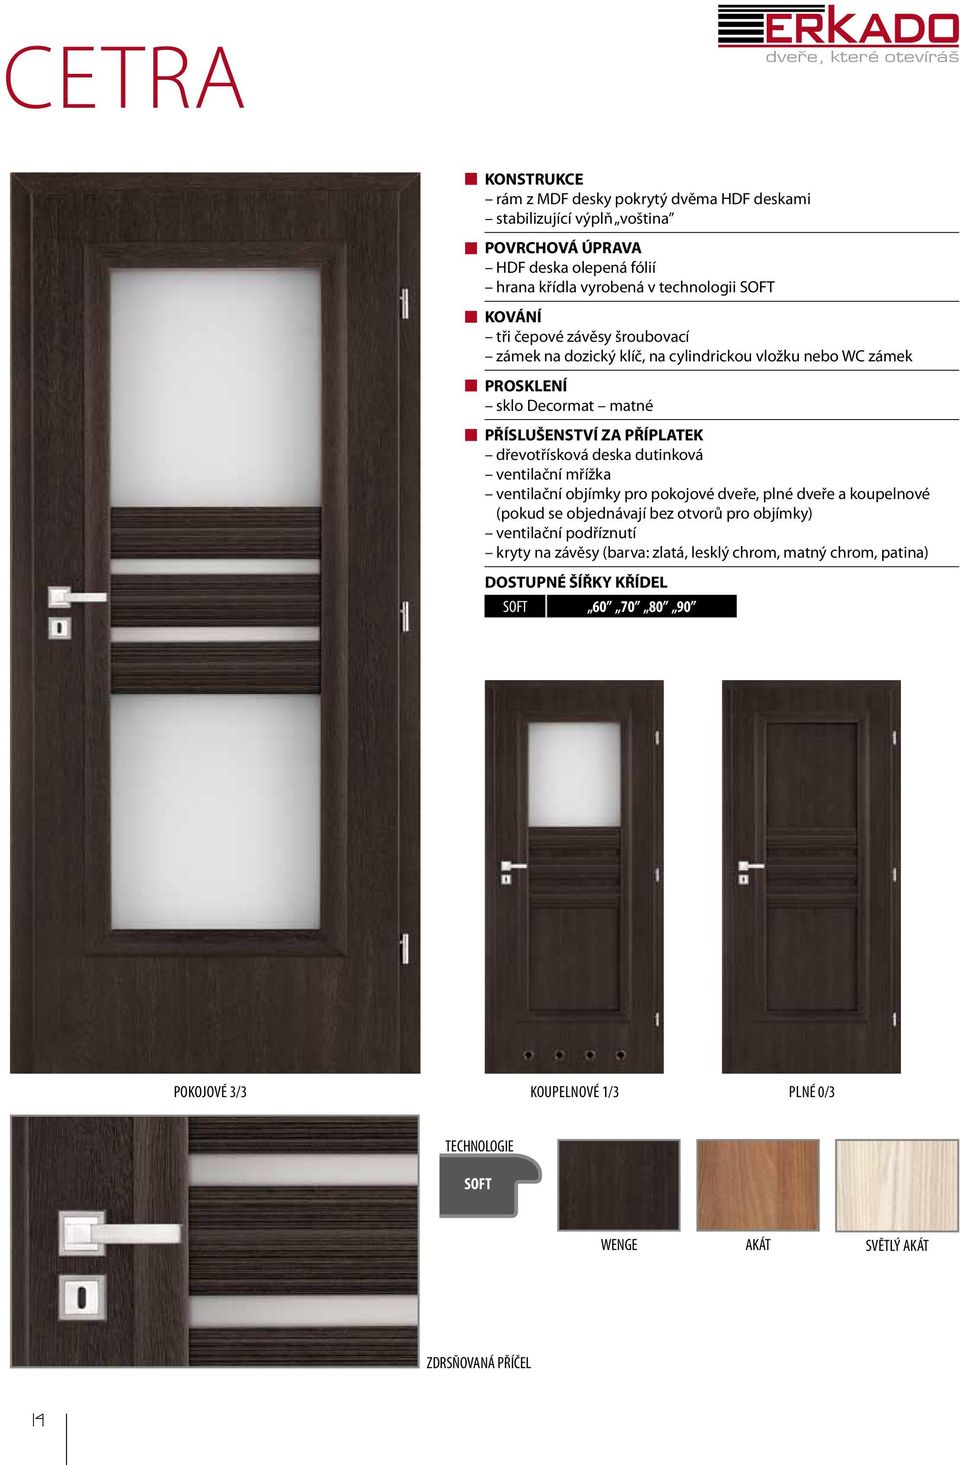 dutinková ventilační mřížka ventilační objímky pro pokojové dveře, plné dveře a koupelnové (pokud se objednávají bez otvorů